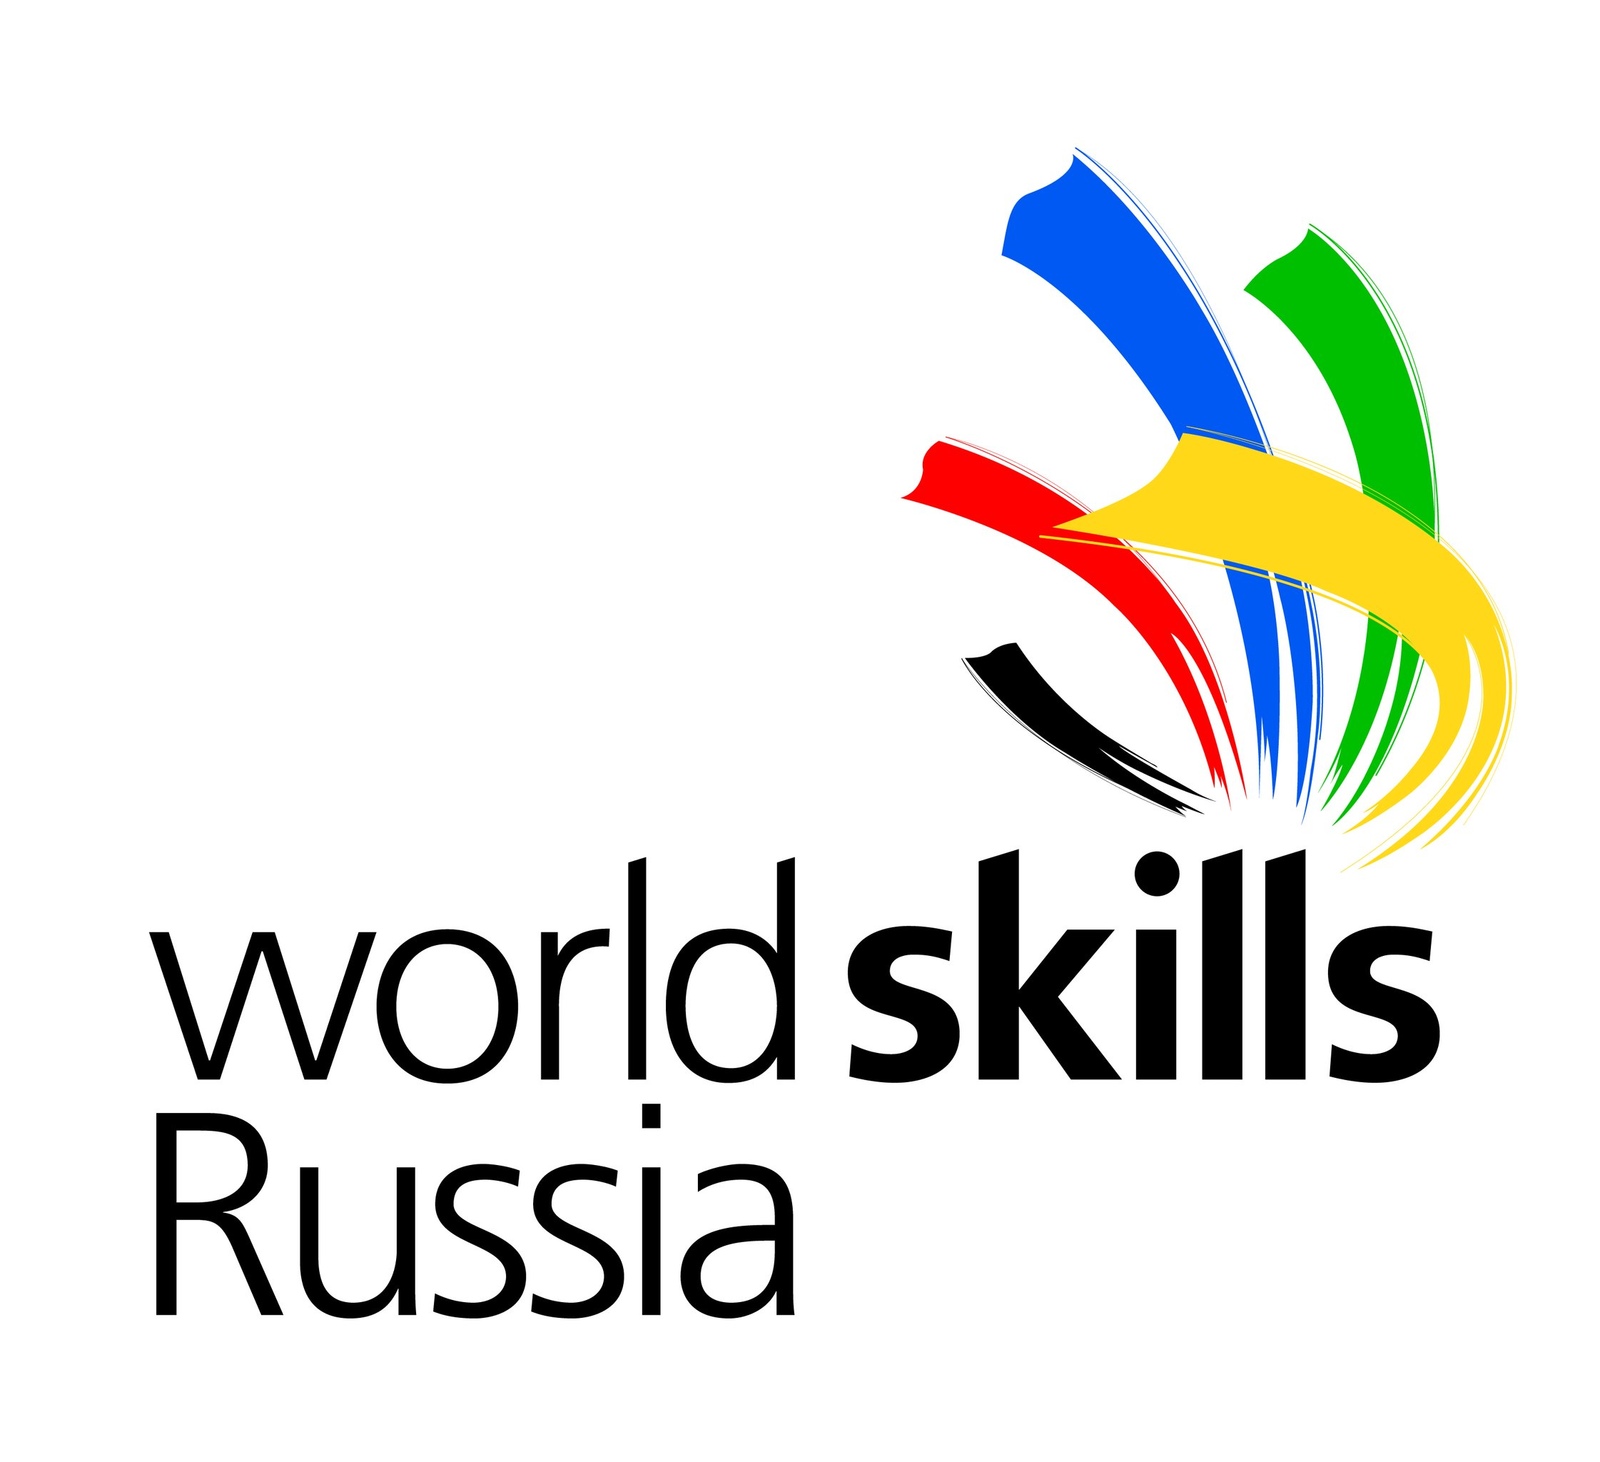 Сборная Башкирии на втором месте в медальном зачёте чемпионата WorldSkills